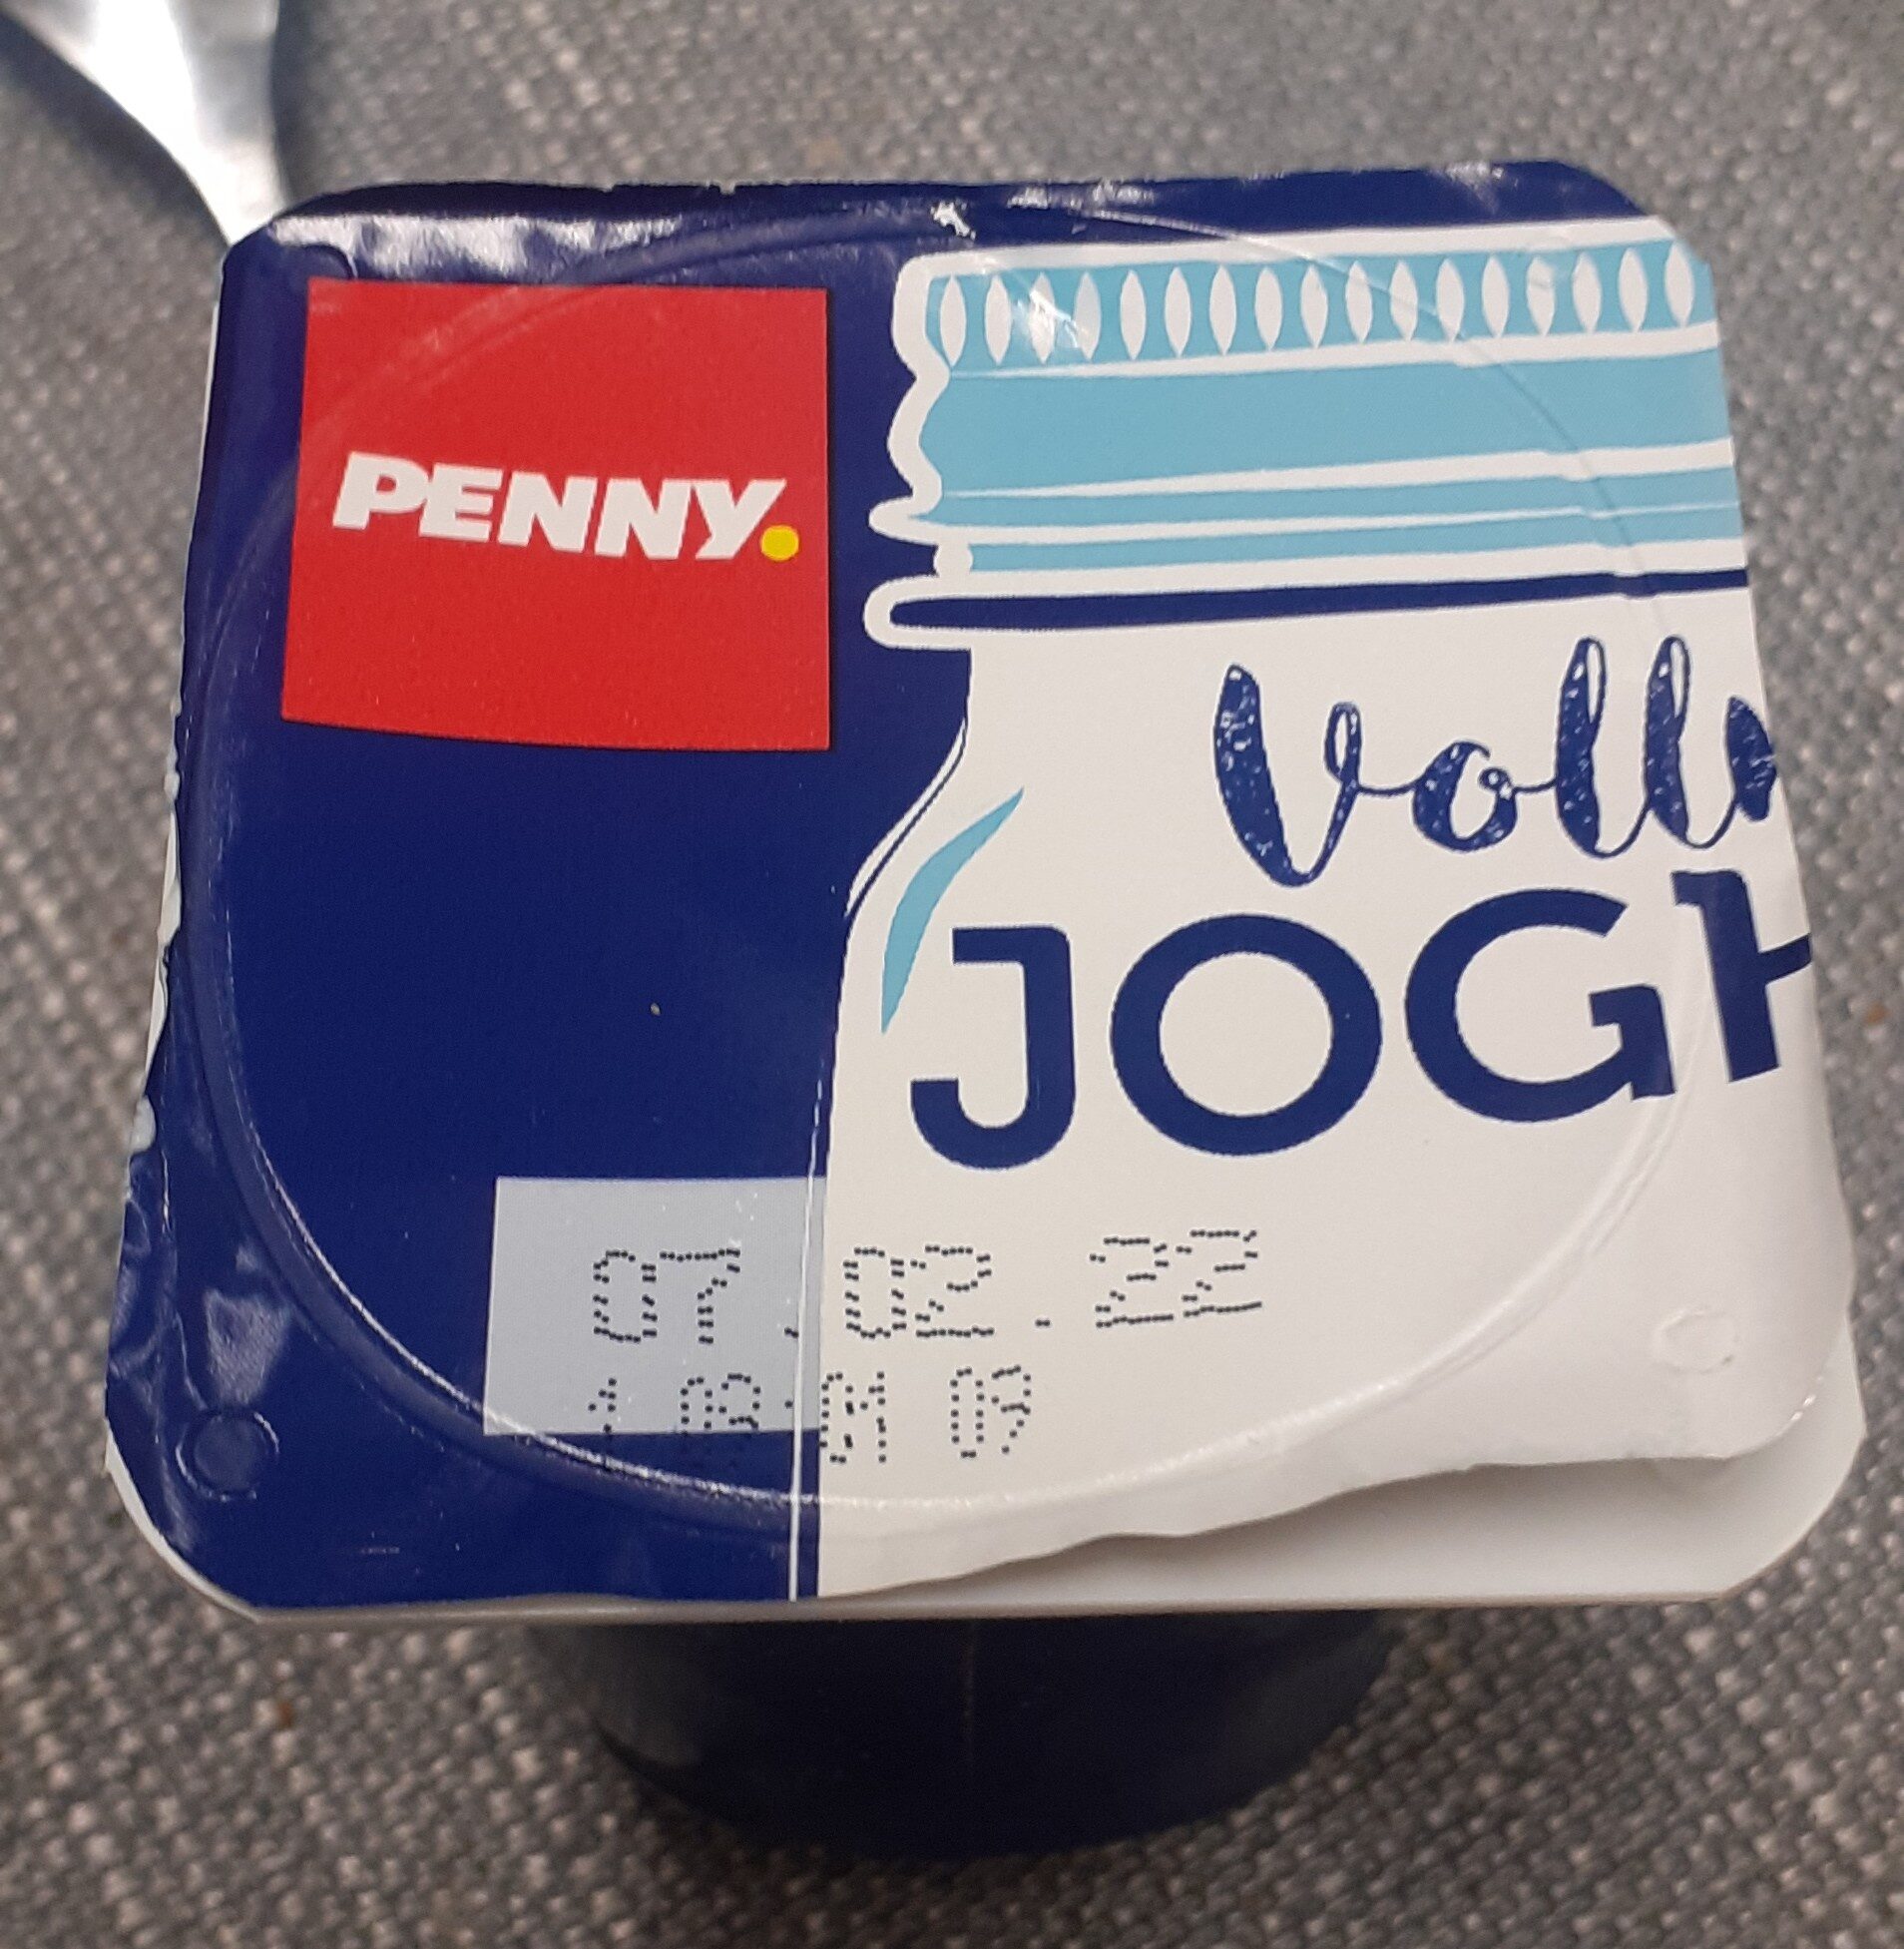 Vollmilch youghurt - Ingredienser - de